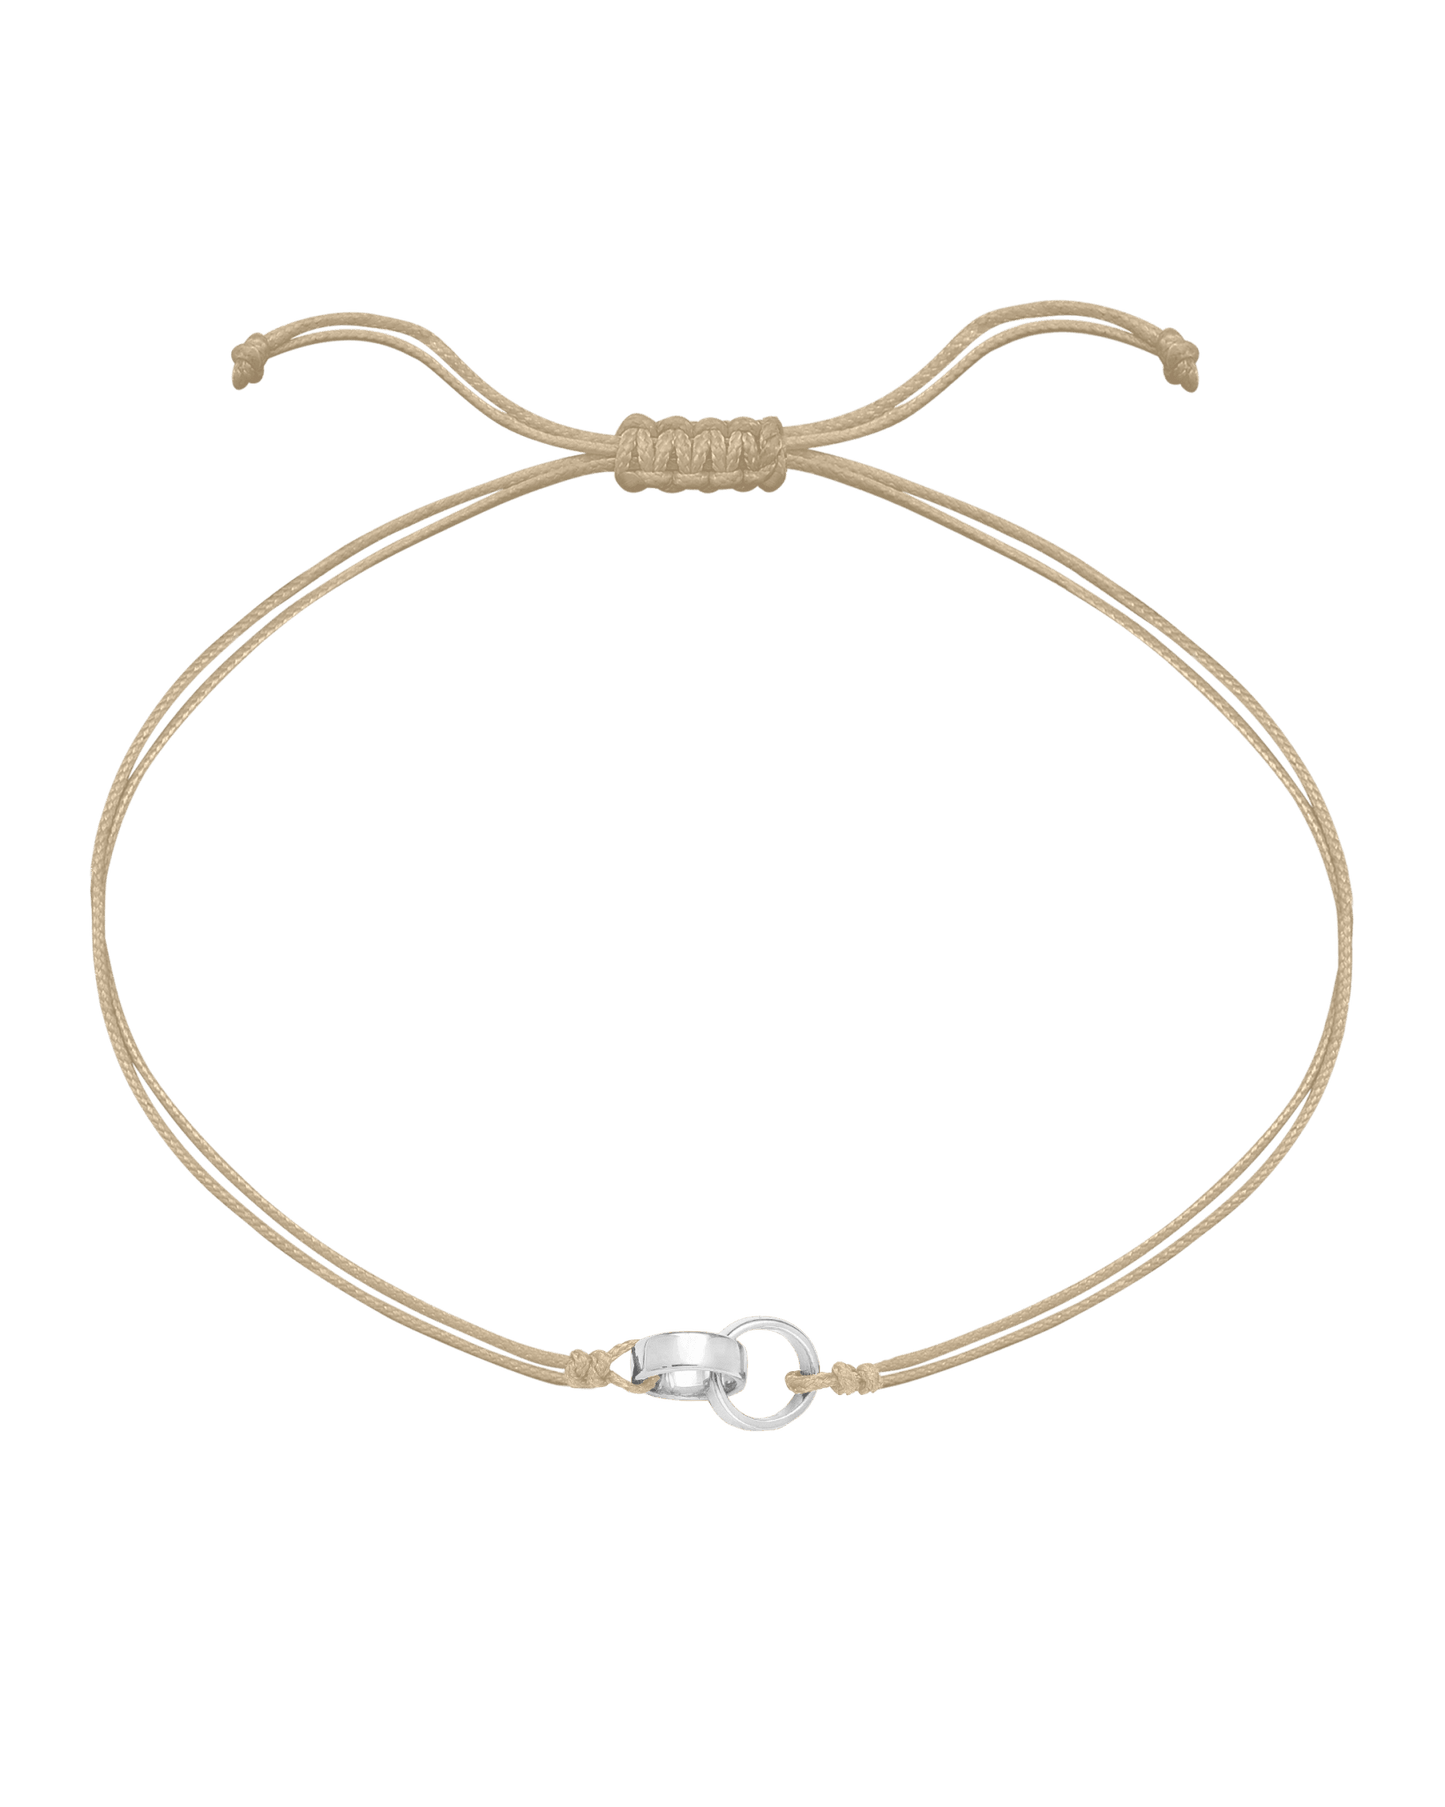 Engravable Links of Love - 925 Sterling Silver Bracelets magal-dev 2 Beige 